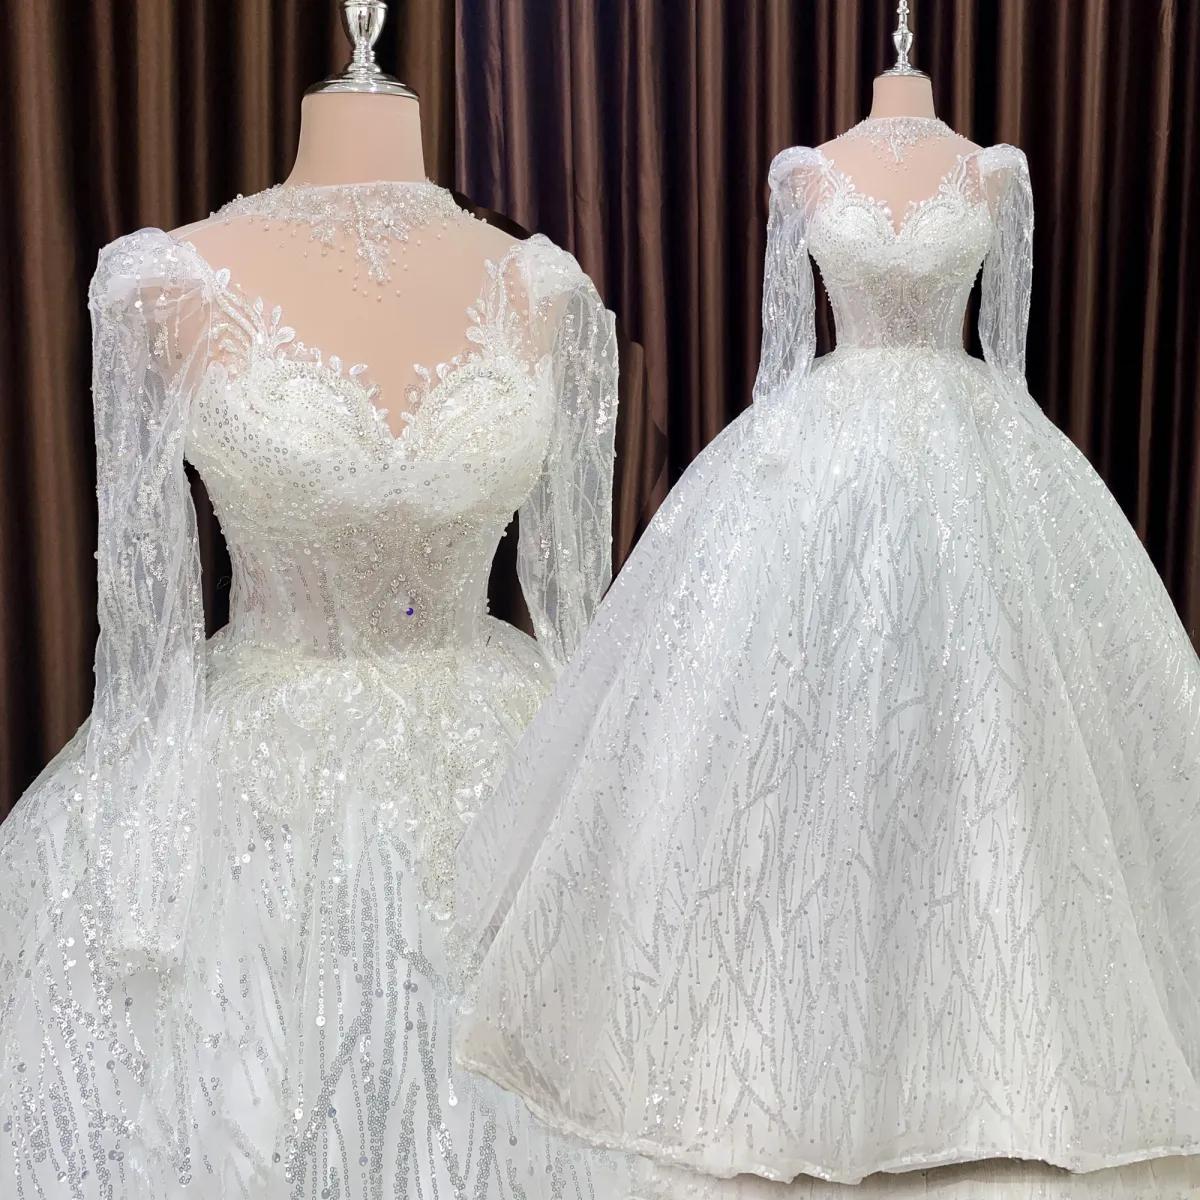 Reem Acra ra mắt BST váy cưới đẳng cấp Hoàng gia